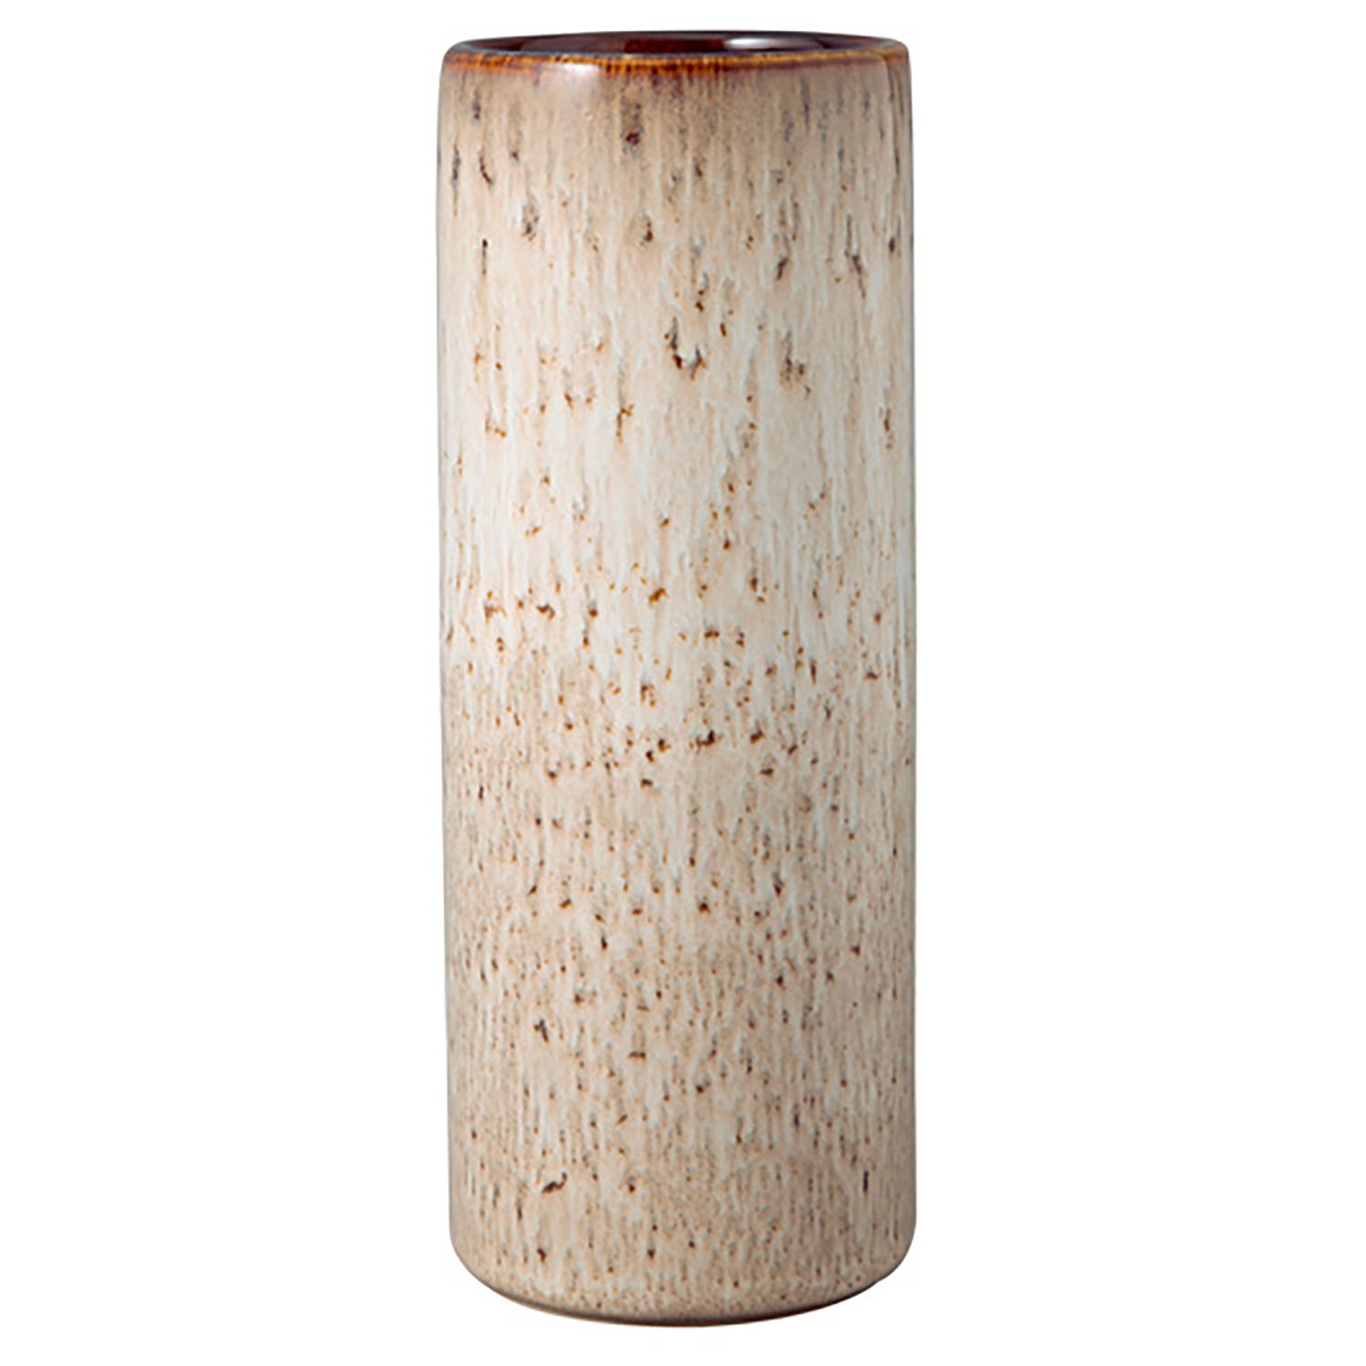 Lave Home Cylinder Vas Beige, 7,5x20 cm